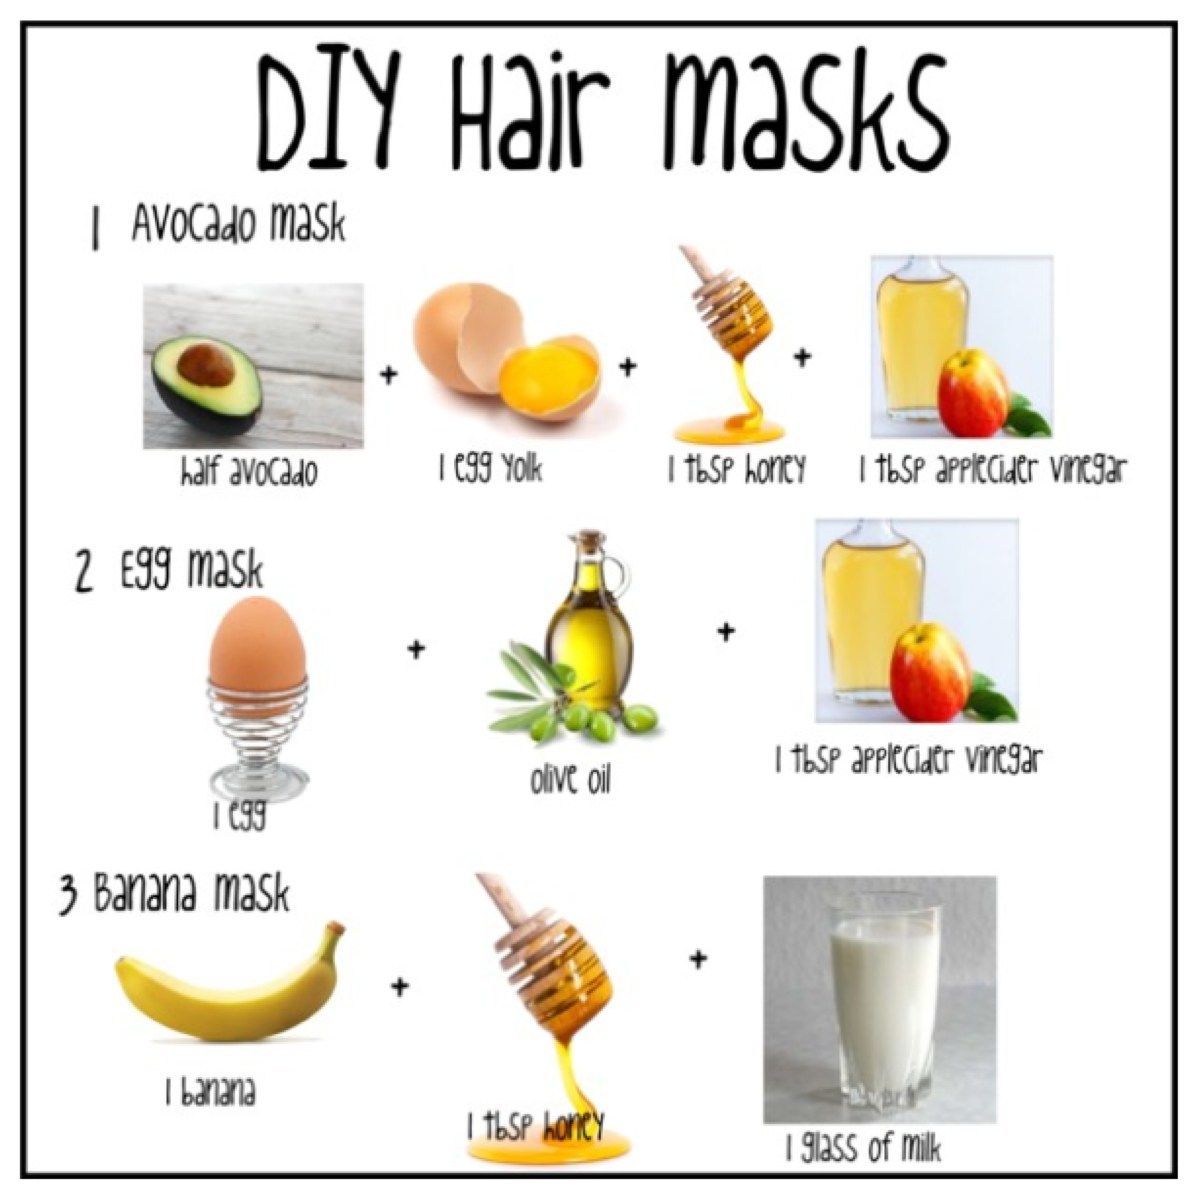 DIY Hair Masks -   16 hair Mask diy ideas